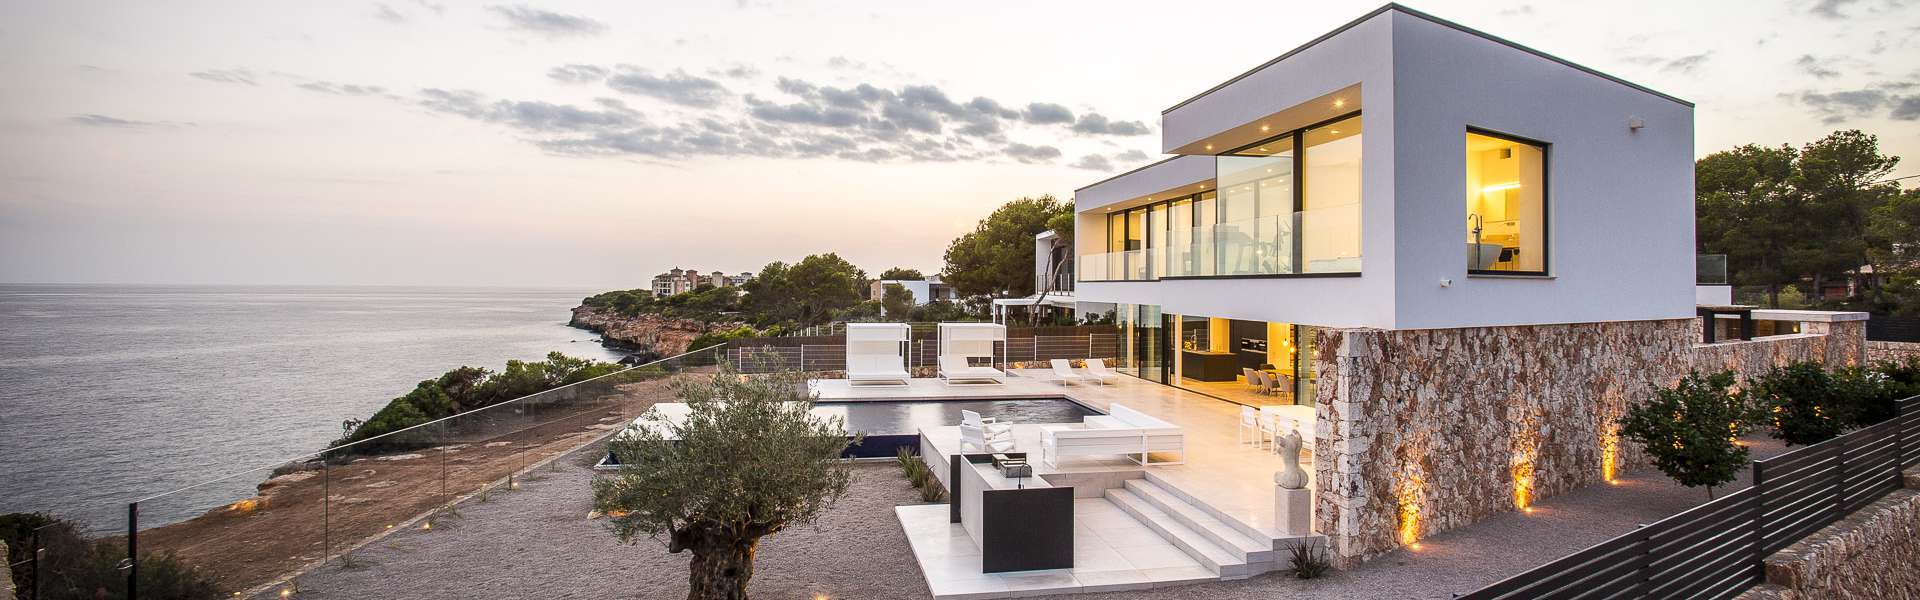 Cala Pi - Exklusive Villa direkt am Meer